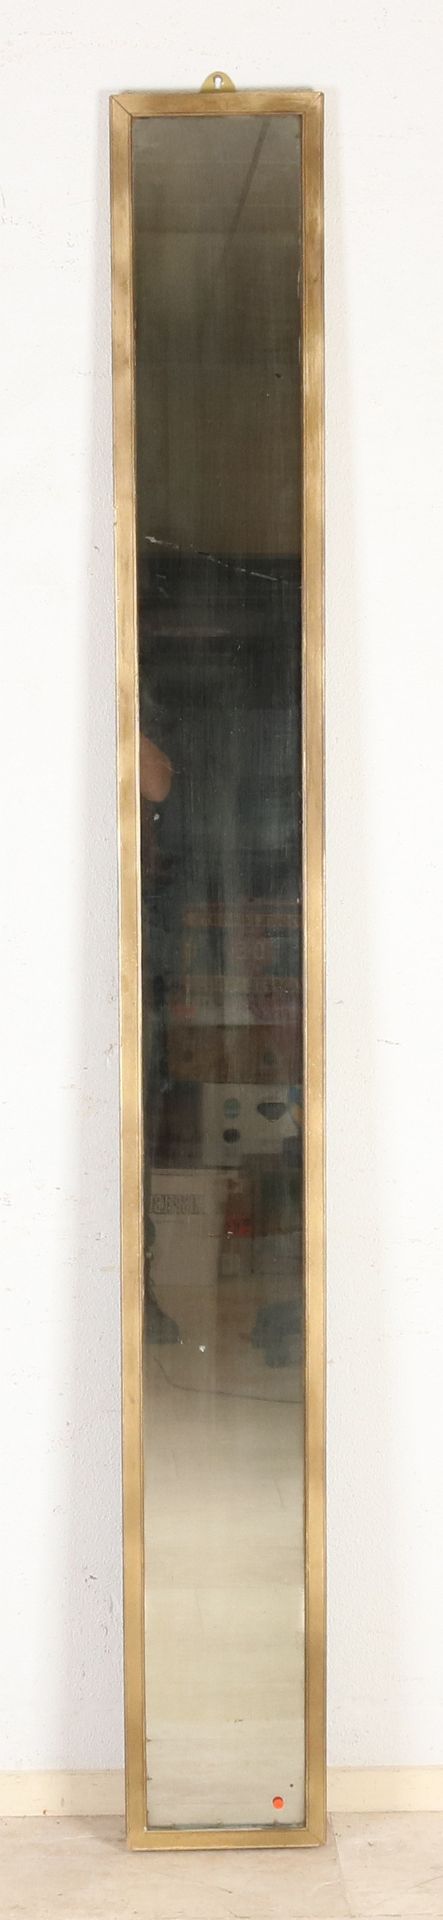 Antique mirror, H 205 x W 24 cm.